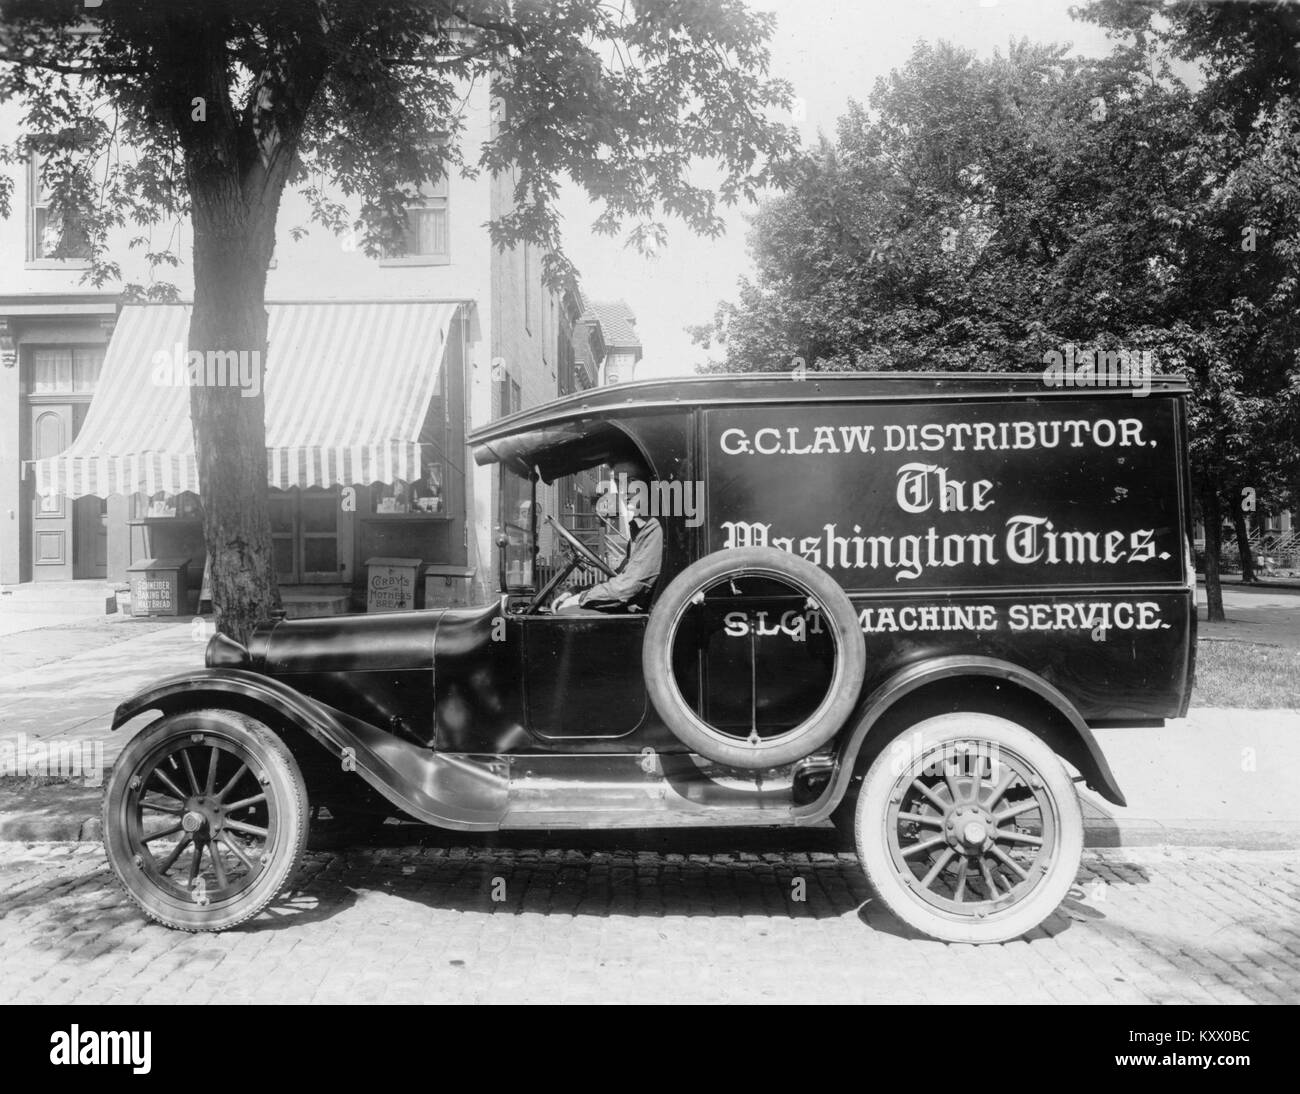 Le Washington Times, Service de machines à sous Banque D'Images